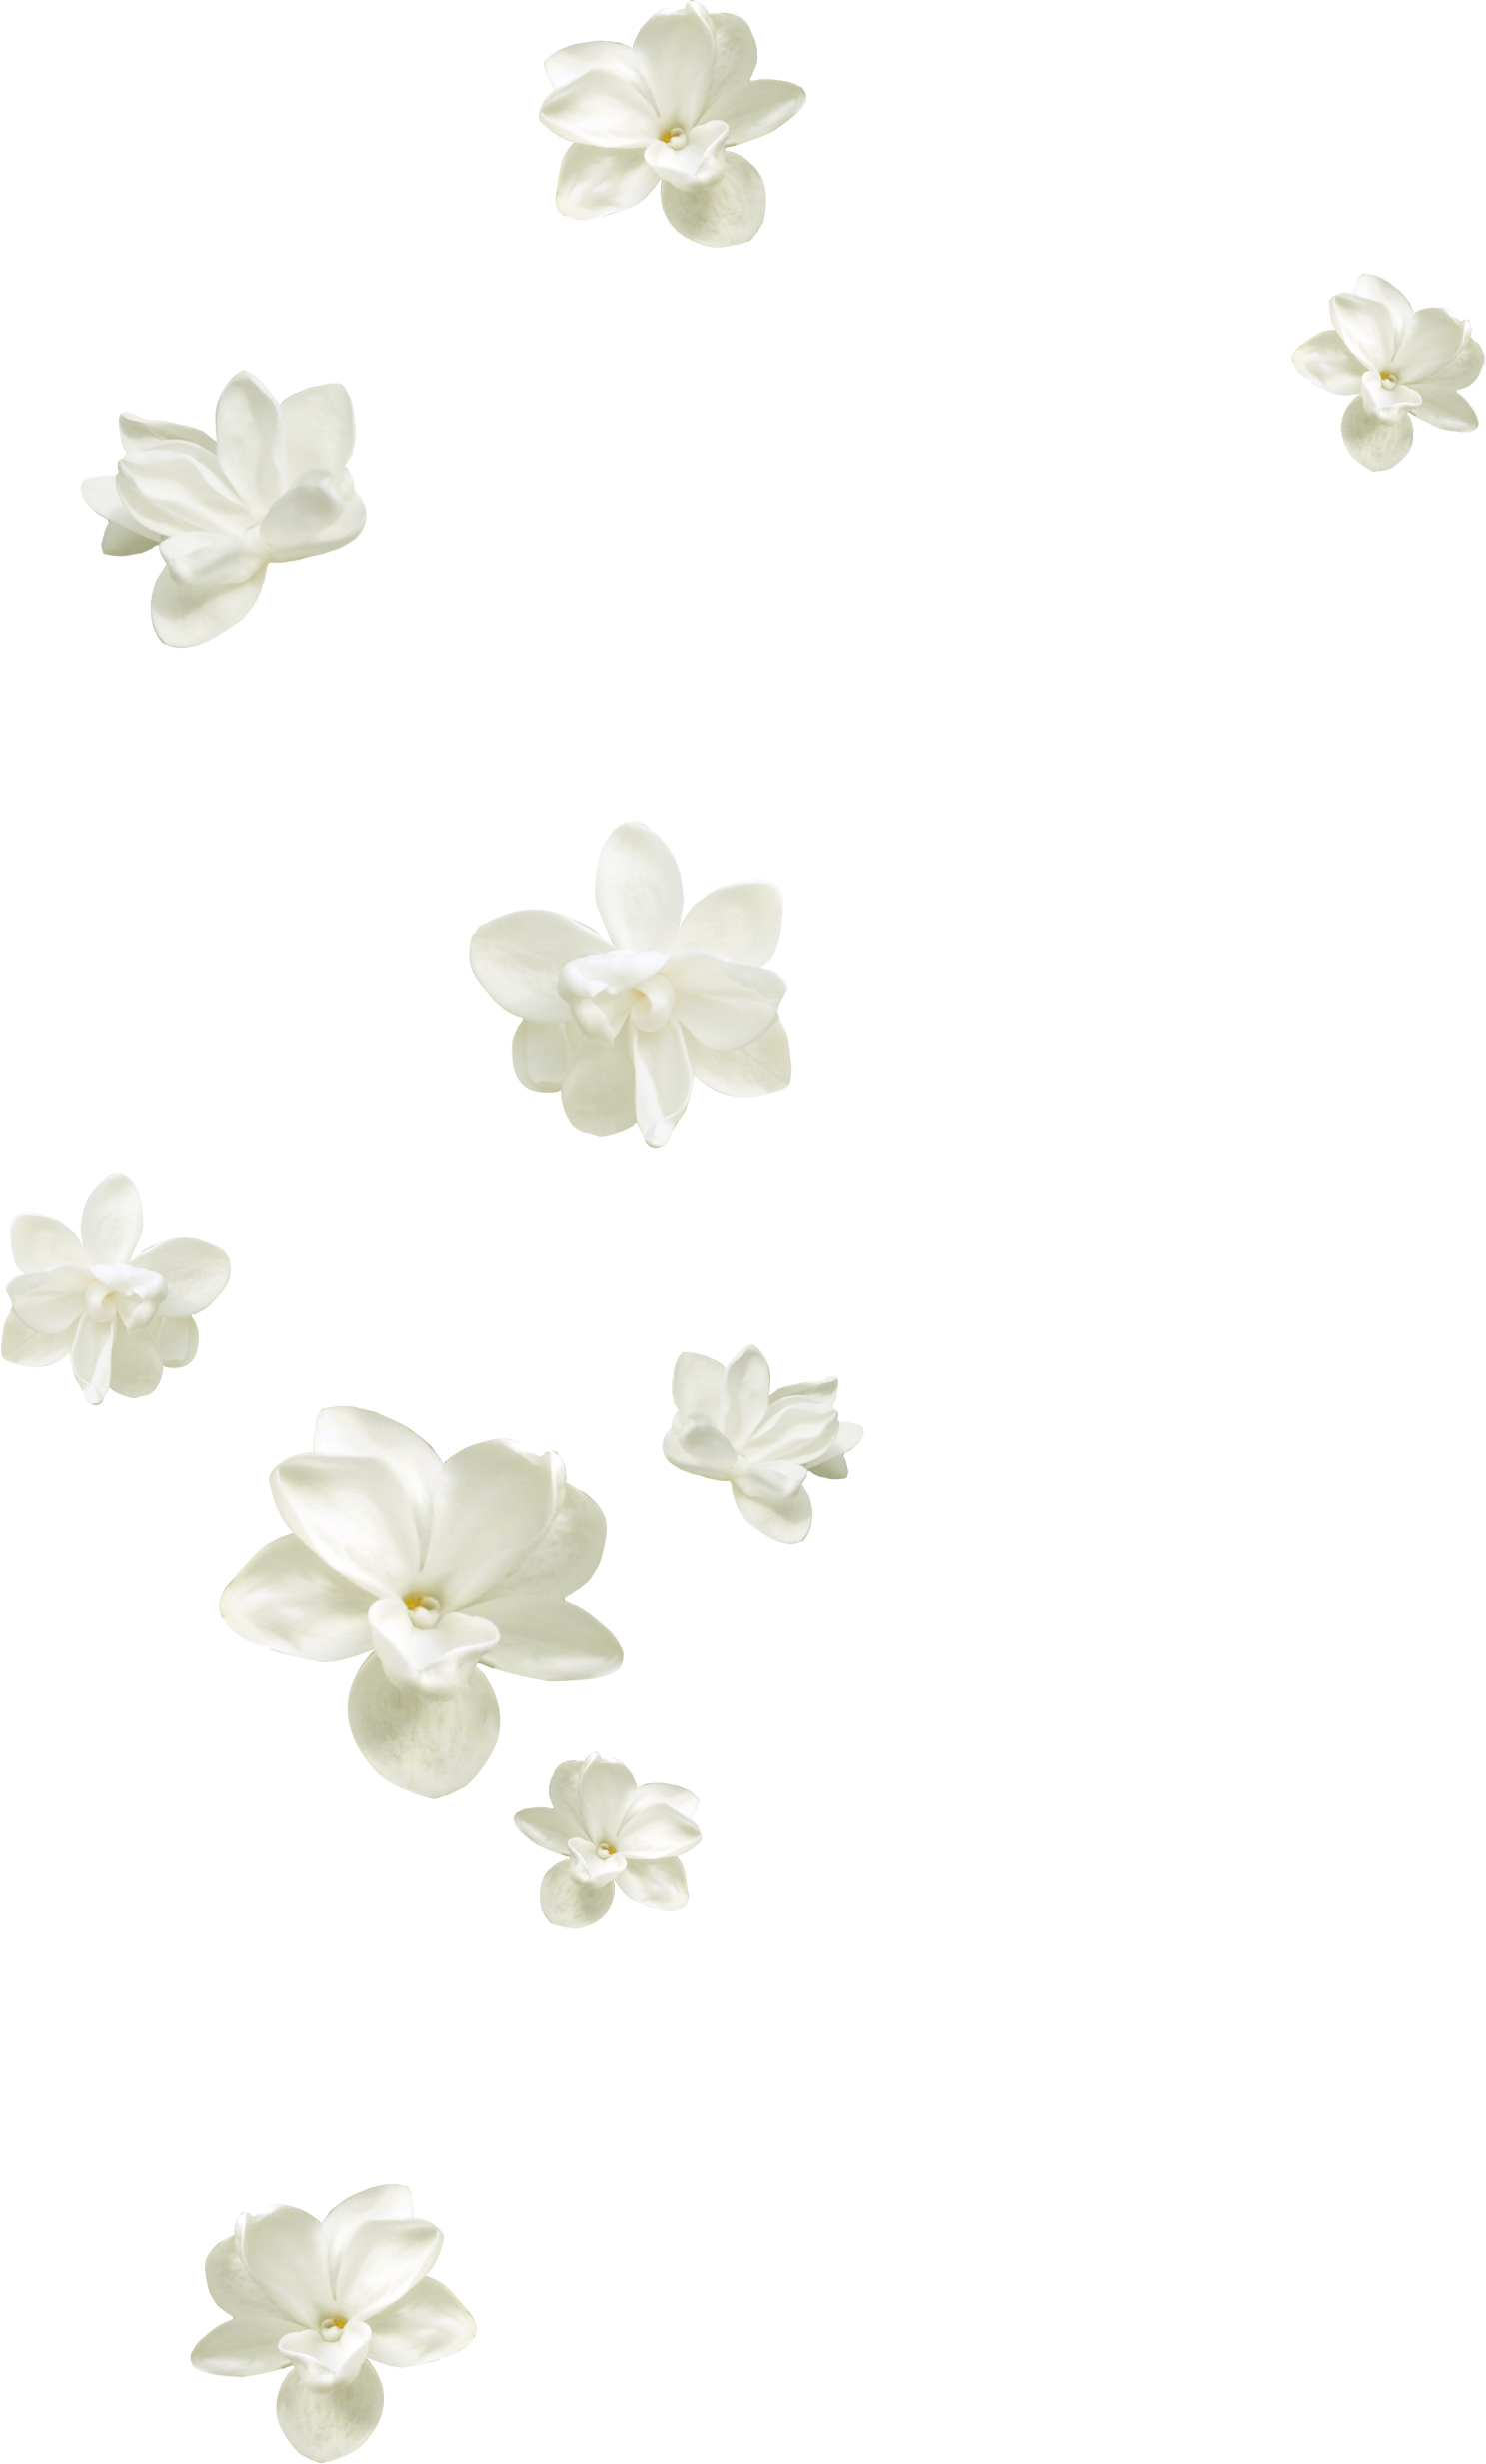 mq white flowers flower garden sticker by @qoutesforlife